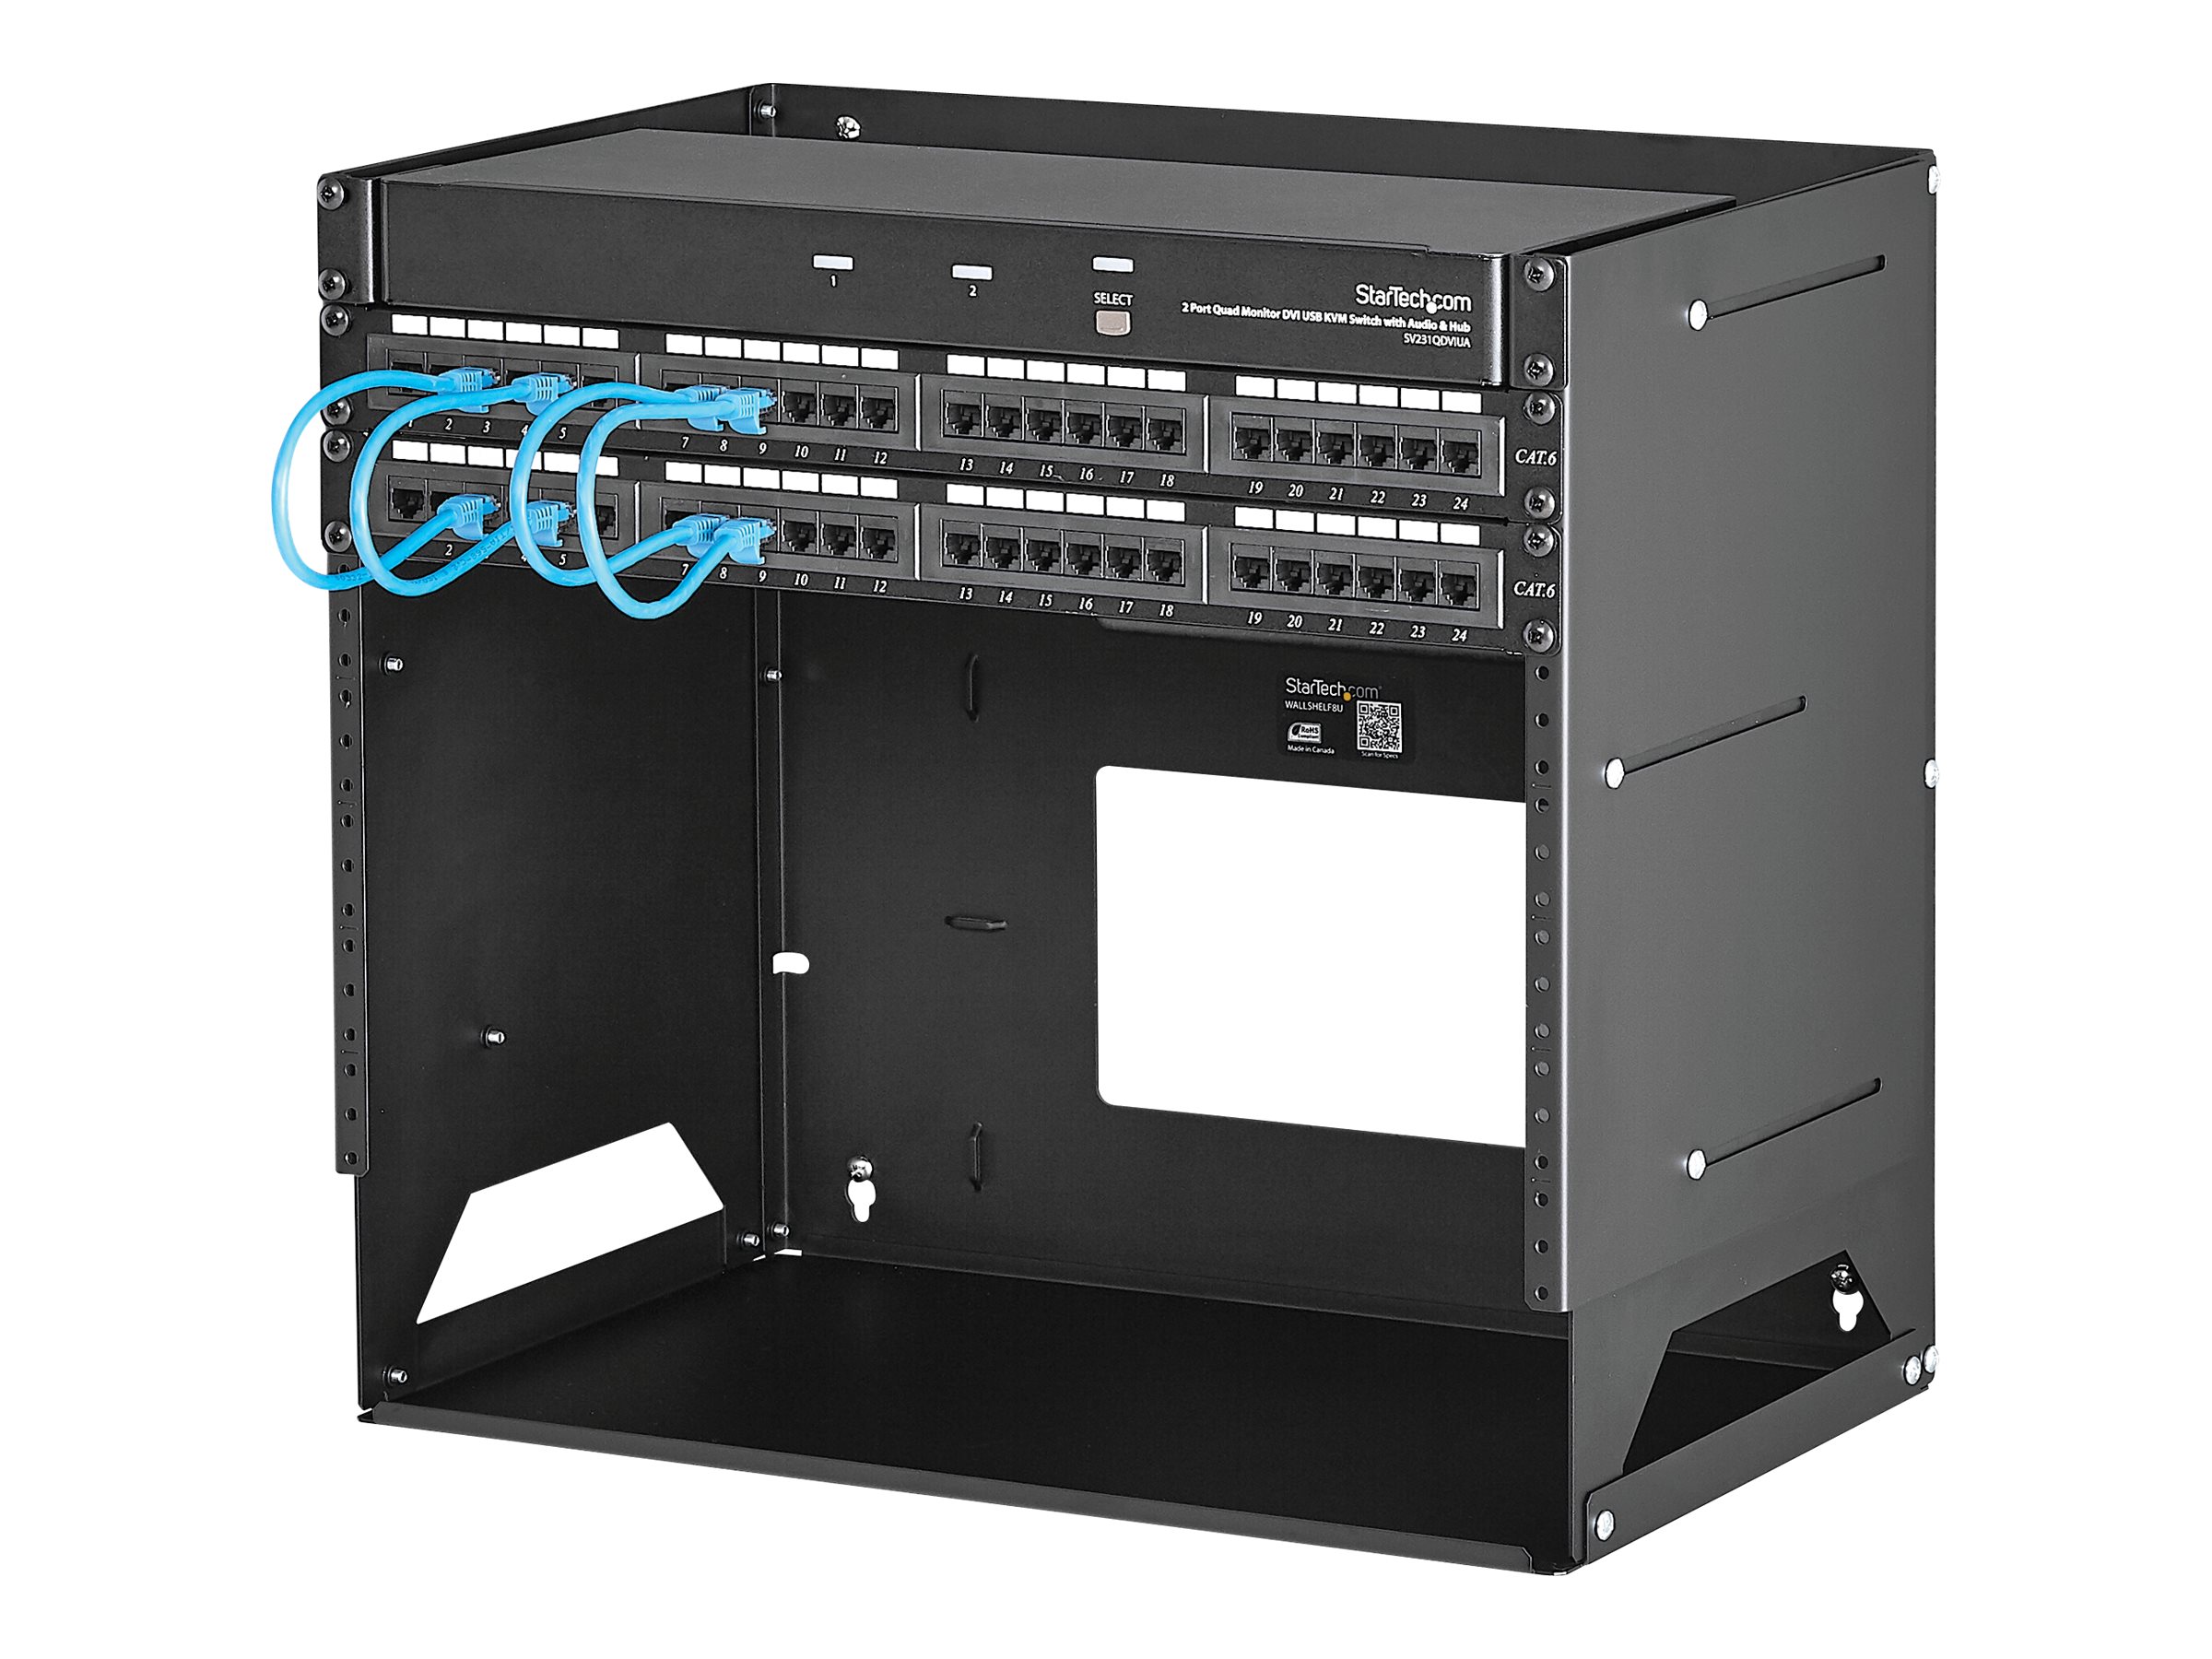 StarTech.com Wandmontage Server Rack mit Fachboden - 4HE - Anpassbar von 30,5 cm - 45,7cm - Rack (Wandbefestigung) - Schwarz